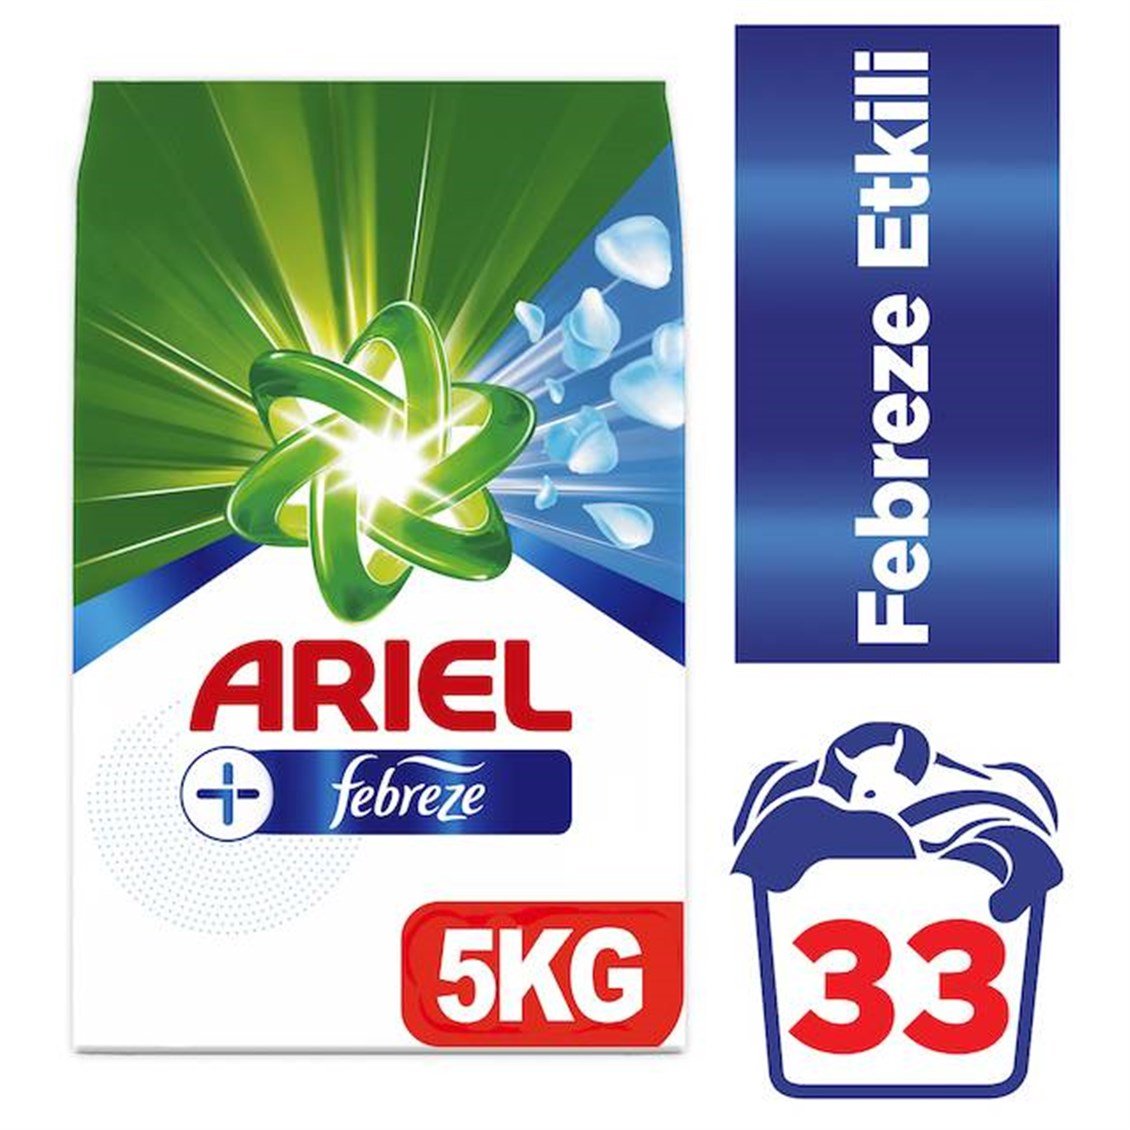 Ariel Febreze Aqua Toz Deterjan 5 kg - Onur Market